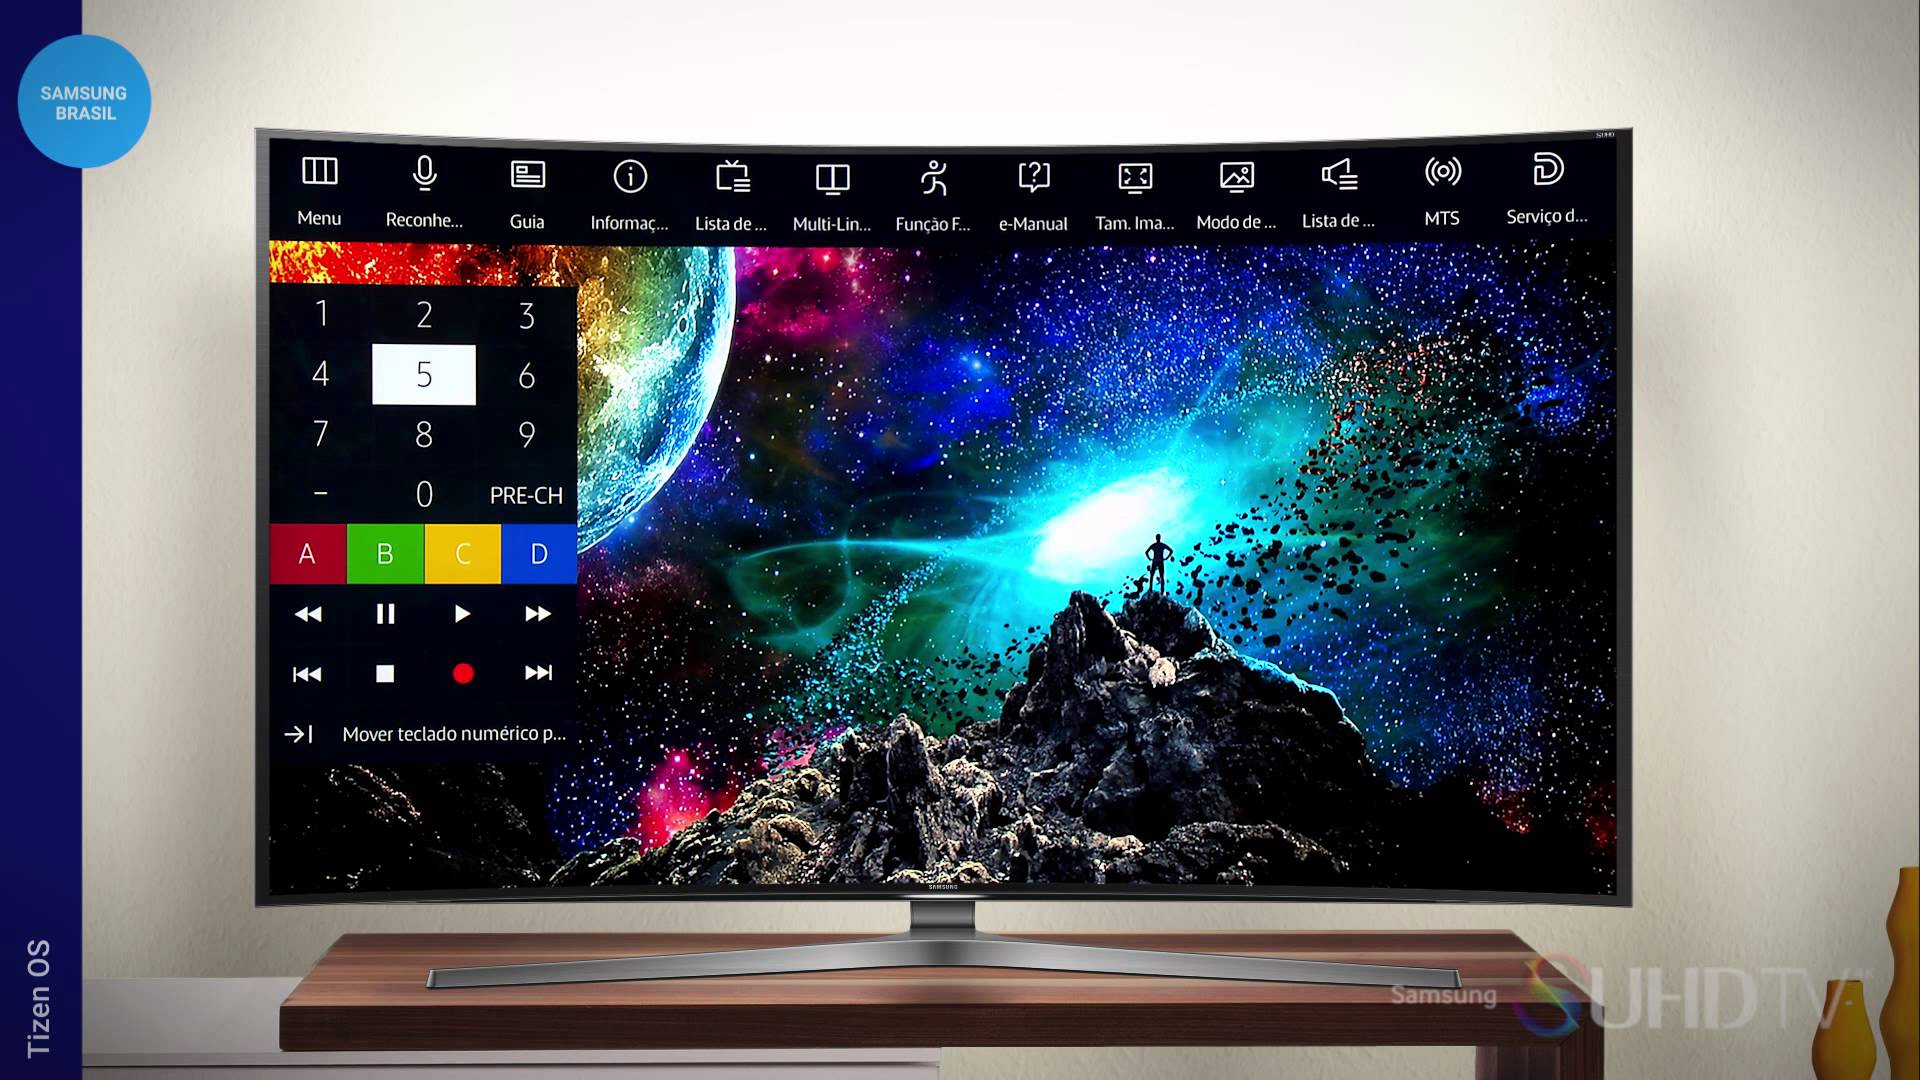 Версии телевизоров samsung. Samsung TV 2015. Поколения телевизоров самсунг. Смарт ТВ самсунг 2015 года. Stream TV Samsung TV.